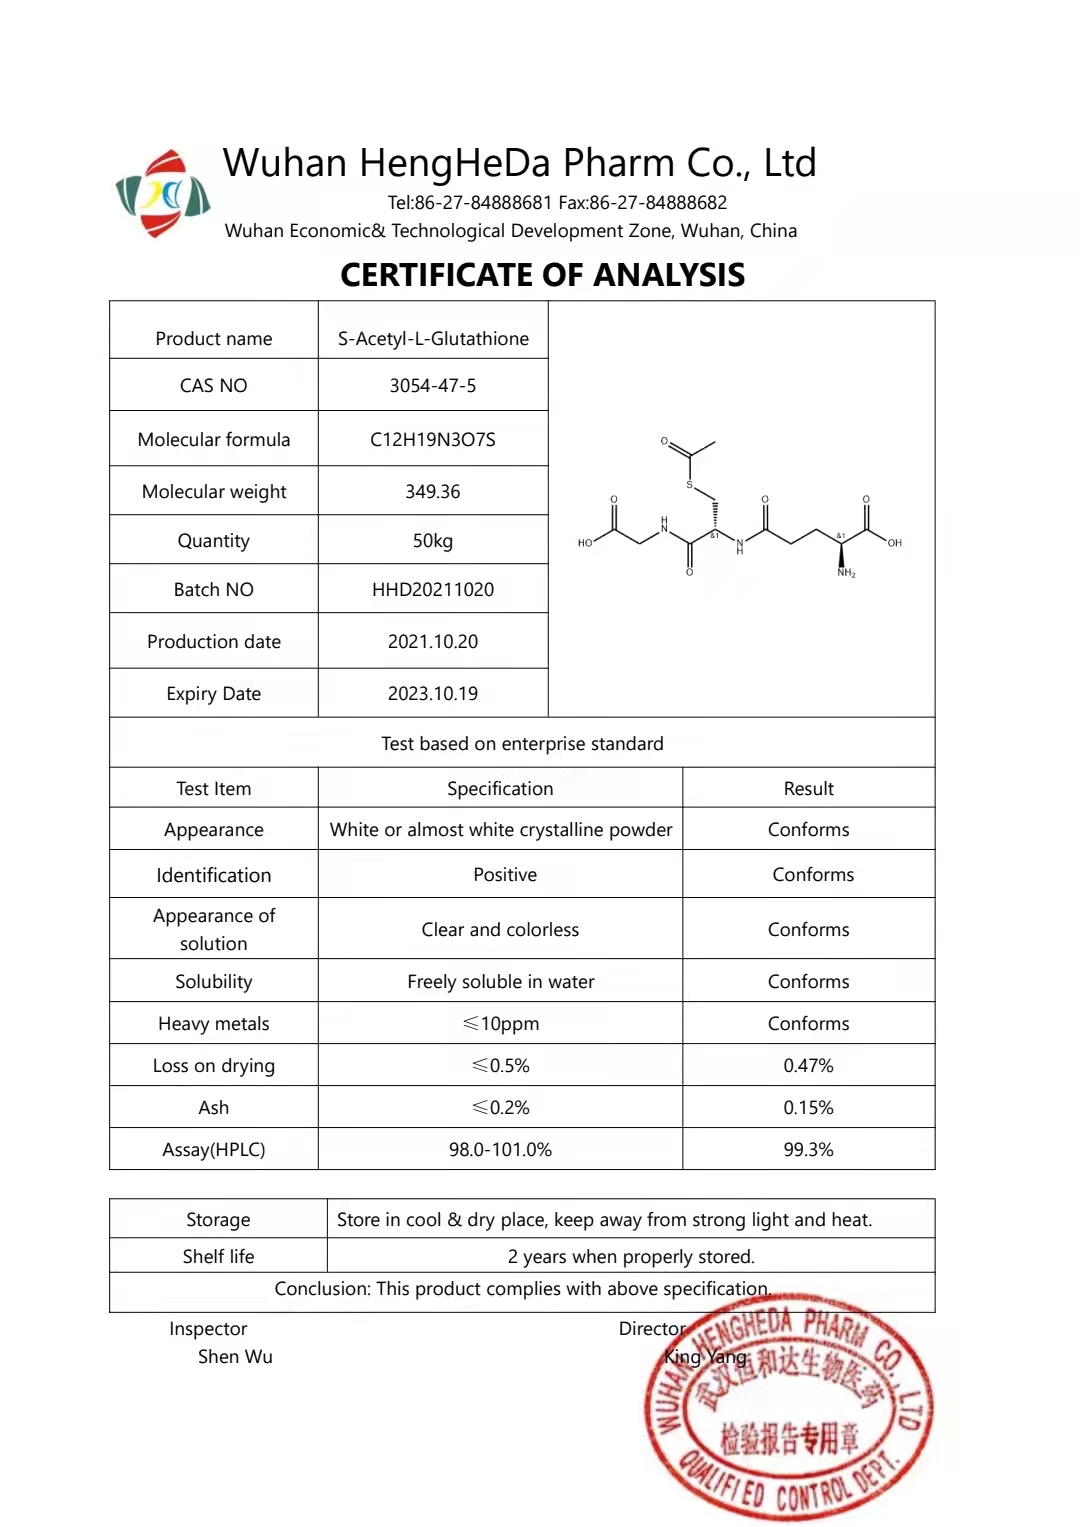 S-Acetylglutathione CAS 3054-47-5